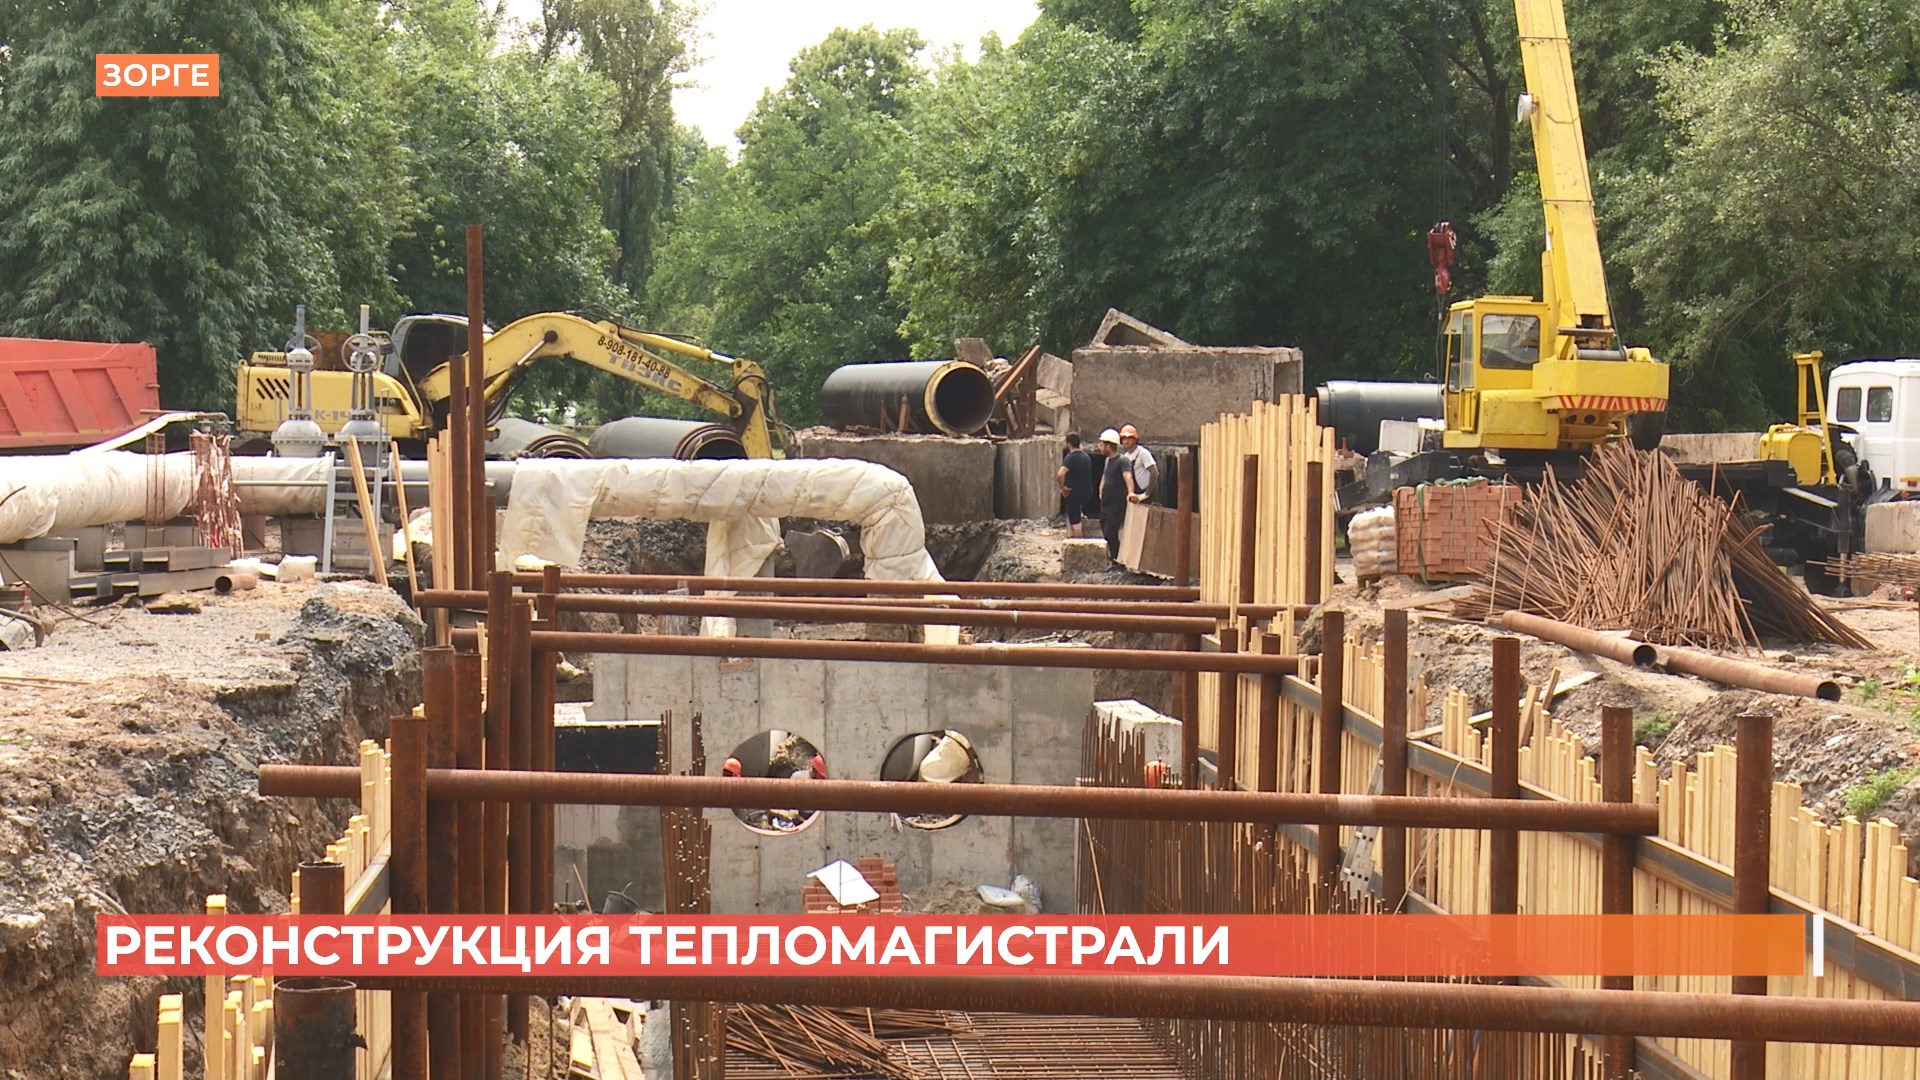 Реконструкция тепломагистрали в Ростове идет полным ходом